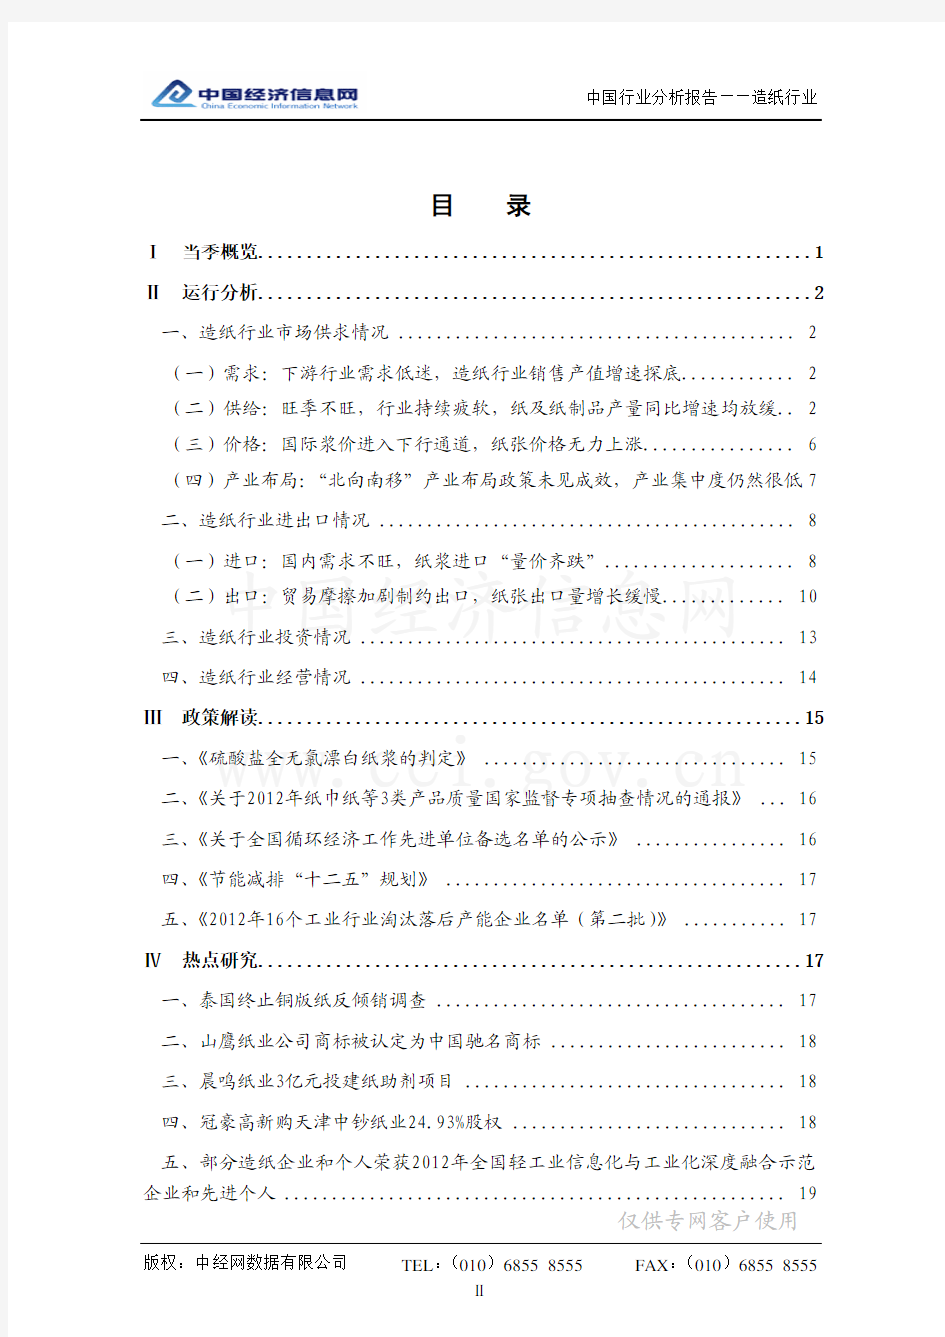 2012年12月3日[产行业信息](中国造纸行业分析报告)